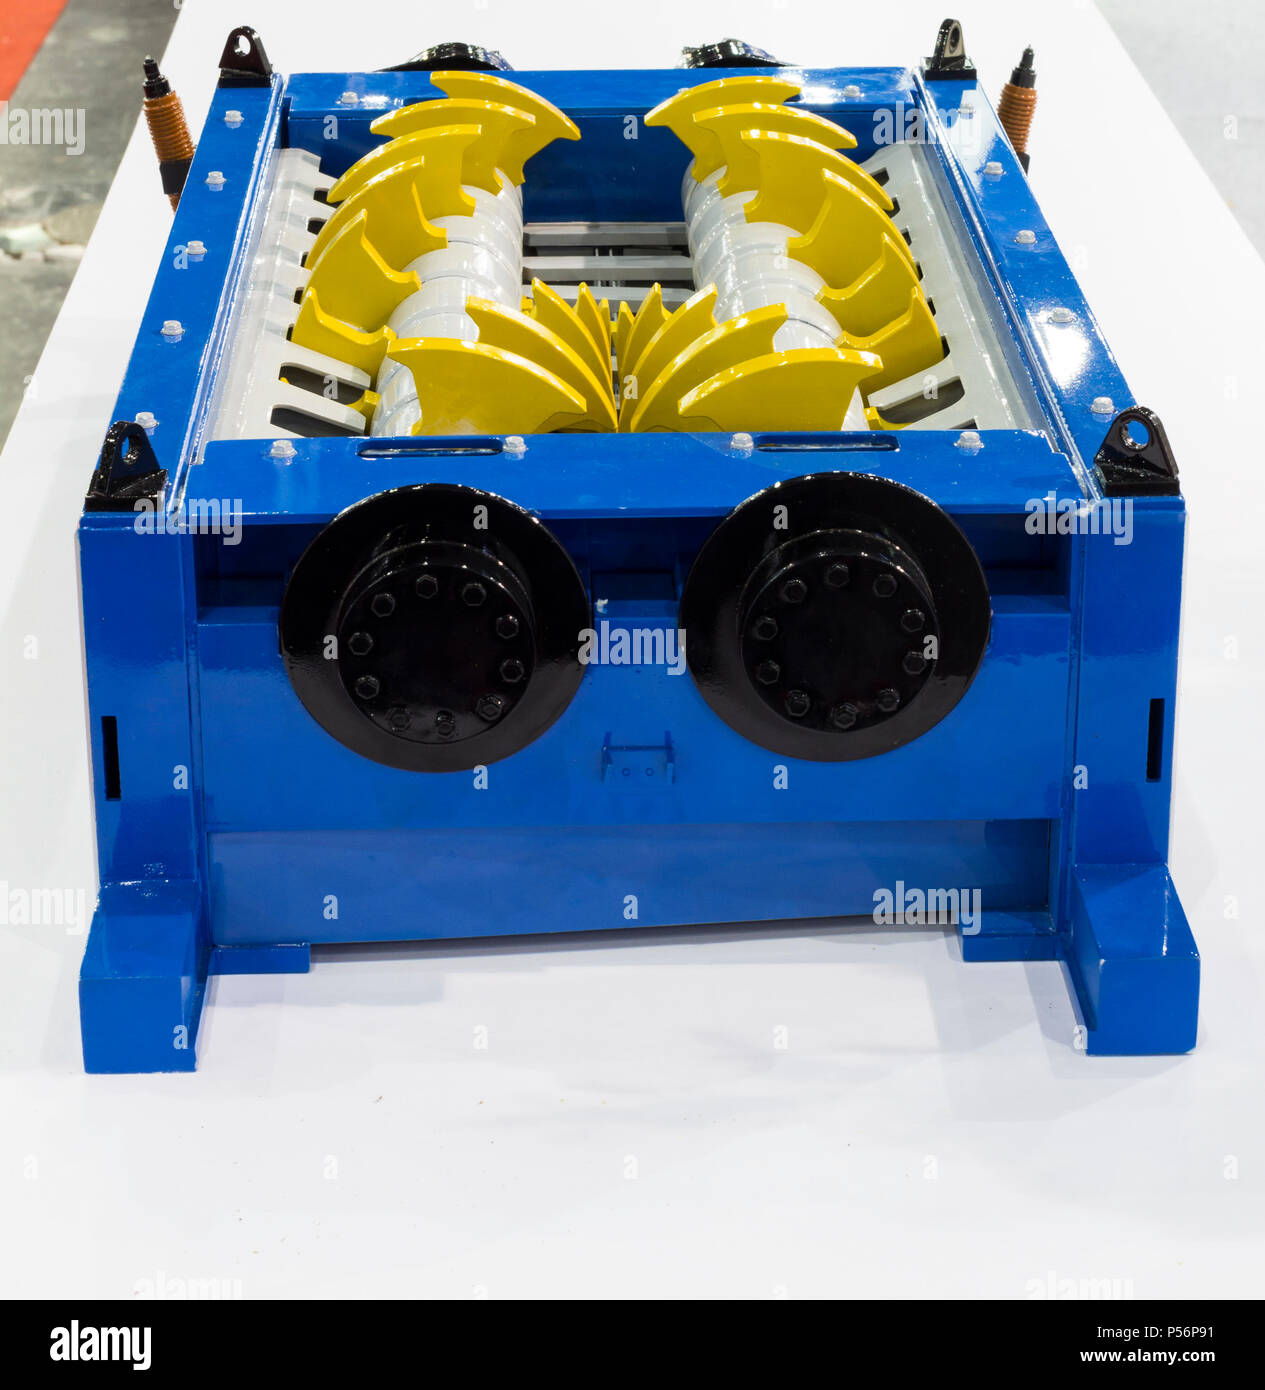 Modello di macchine trituratrici ; la macchina di taglio adatta per un'ampia varietà di rifiuti ; impianto di riciclaggio Foto Stock